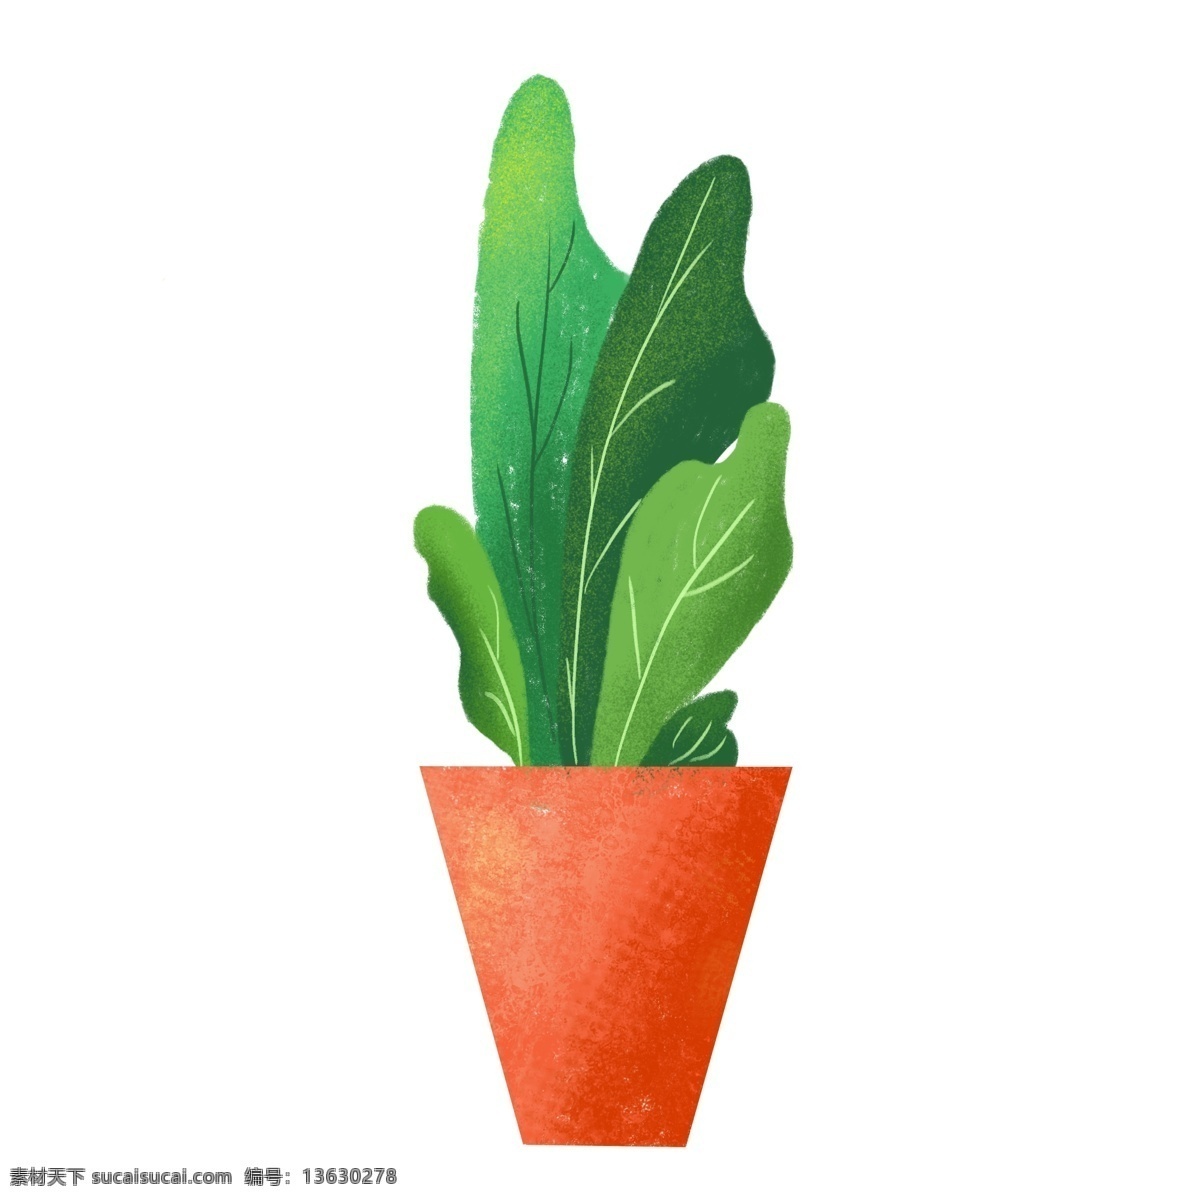 绿色 手绘 盆栽 植物 商用 绿色植物 观赏植物 装饰植物 手绘植物 绿叶 清新 卡通 手绘风